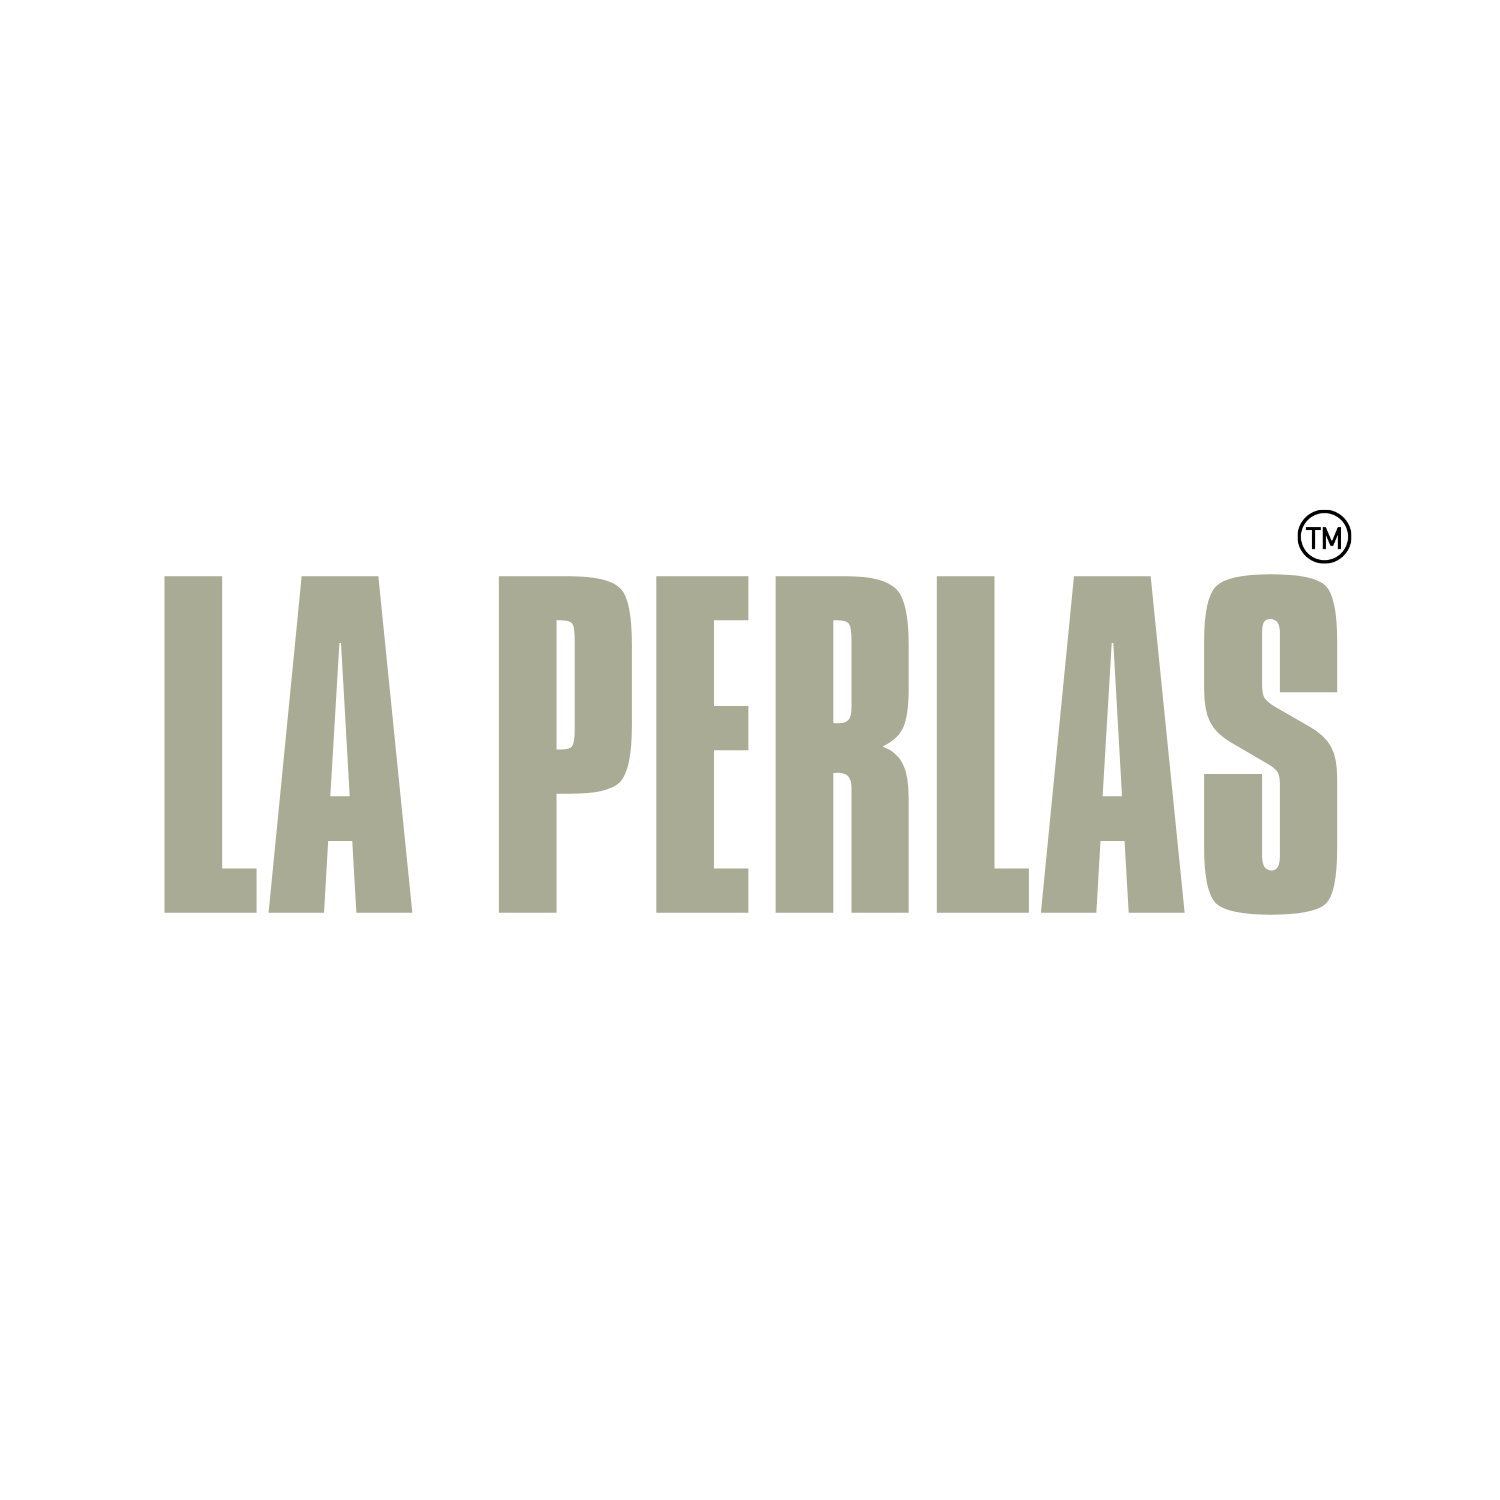 La Perlas : Demo (Prototype)